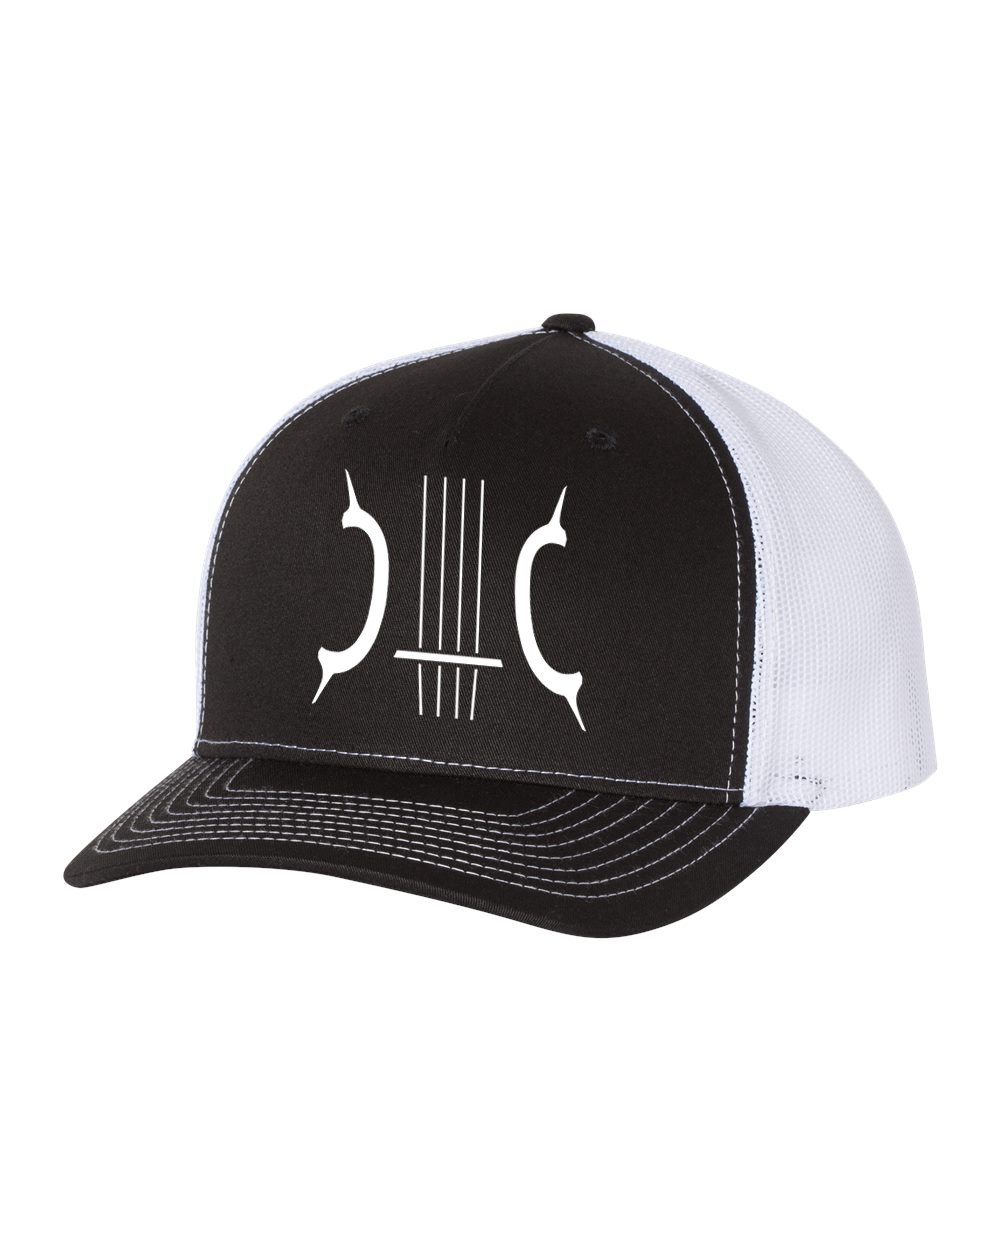 Jake Clayton Logo Trucker Hat - Black/White